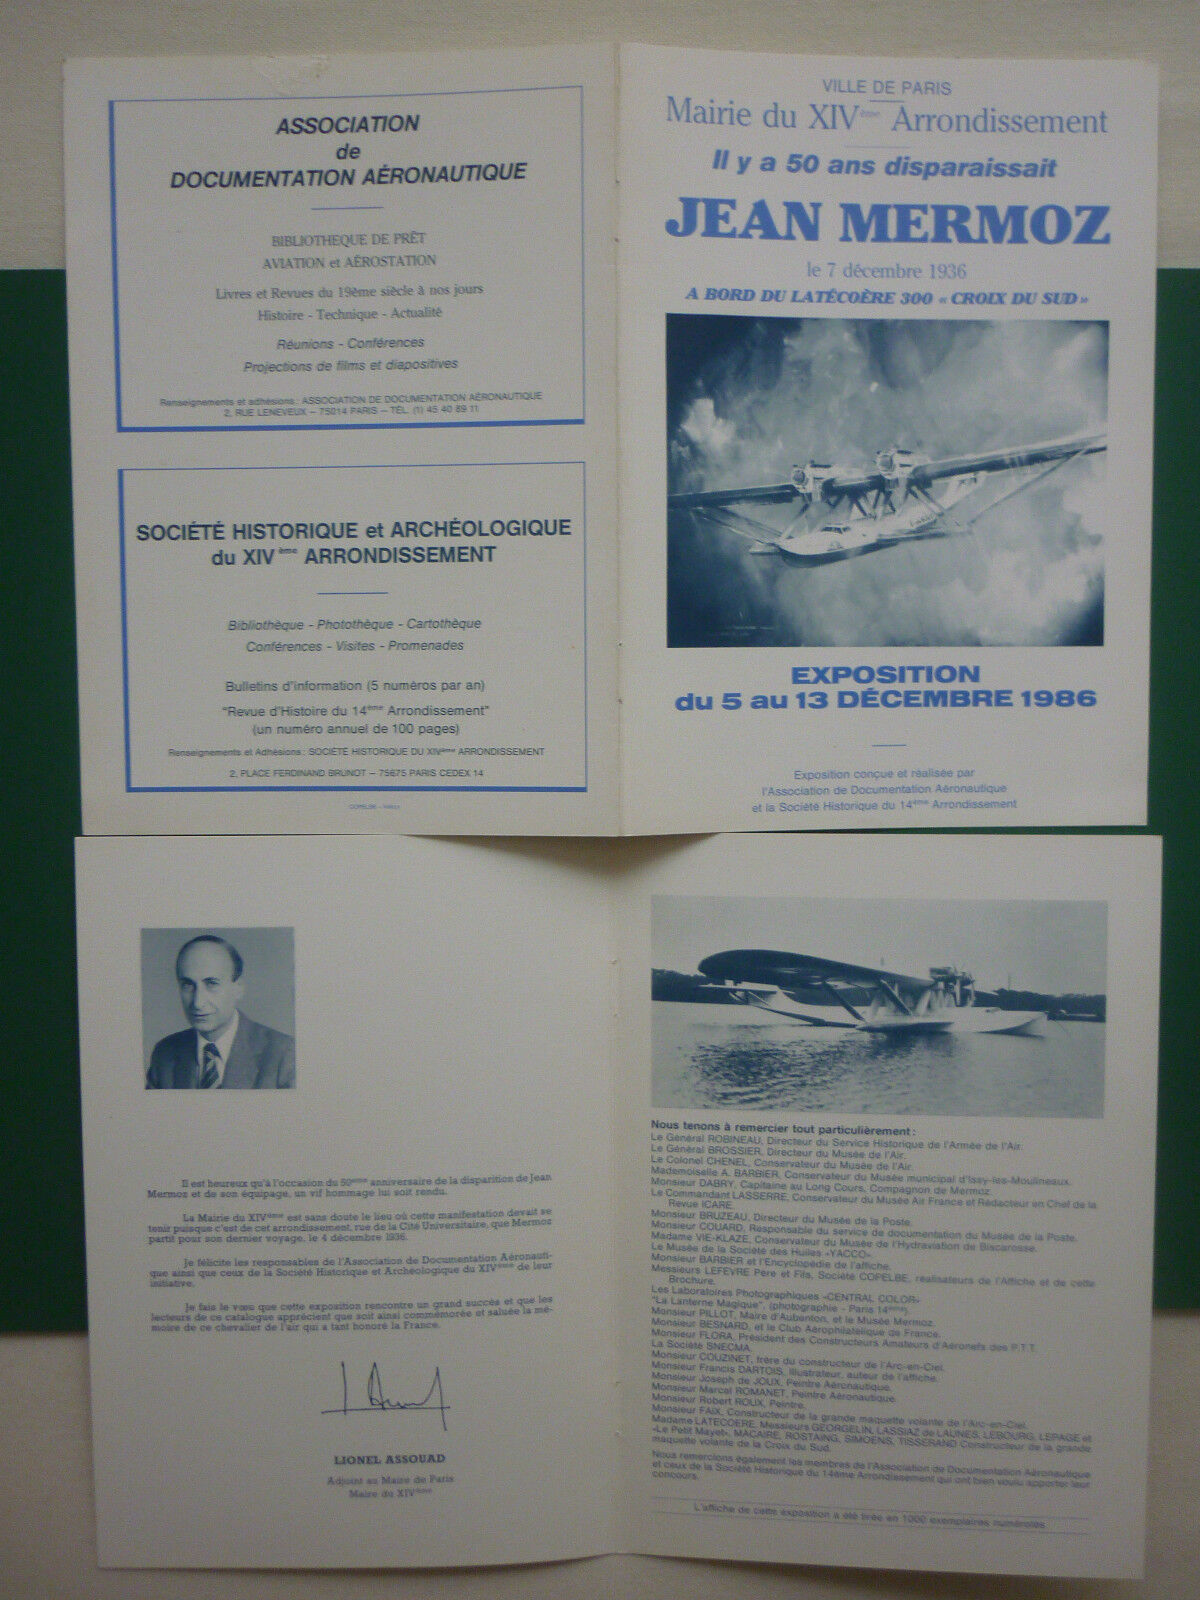 JEAN MERMOZ PARIS 1986 HYDRAVION LATECOERE 300 SOUTHERN CROSS EXHIBITION PLATE